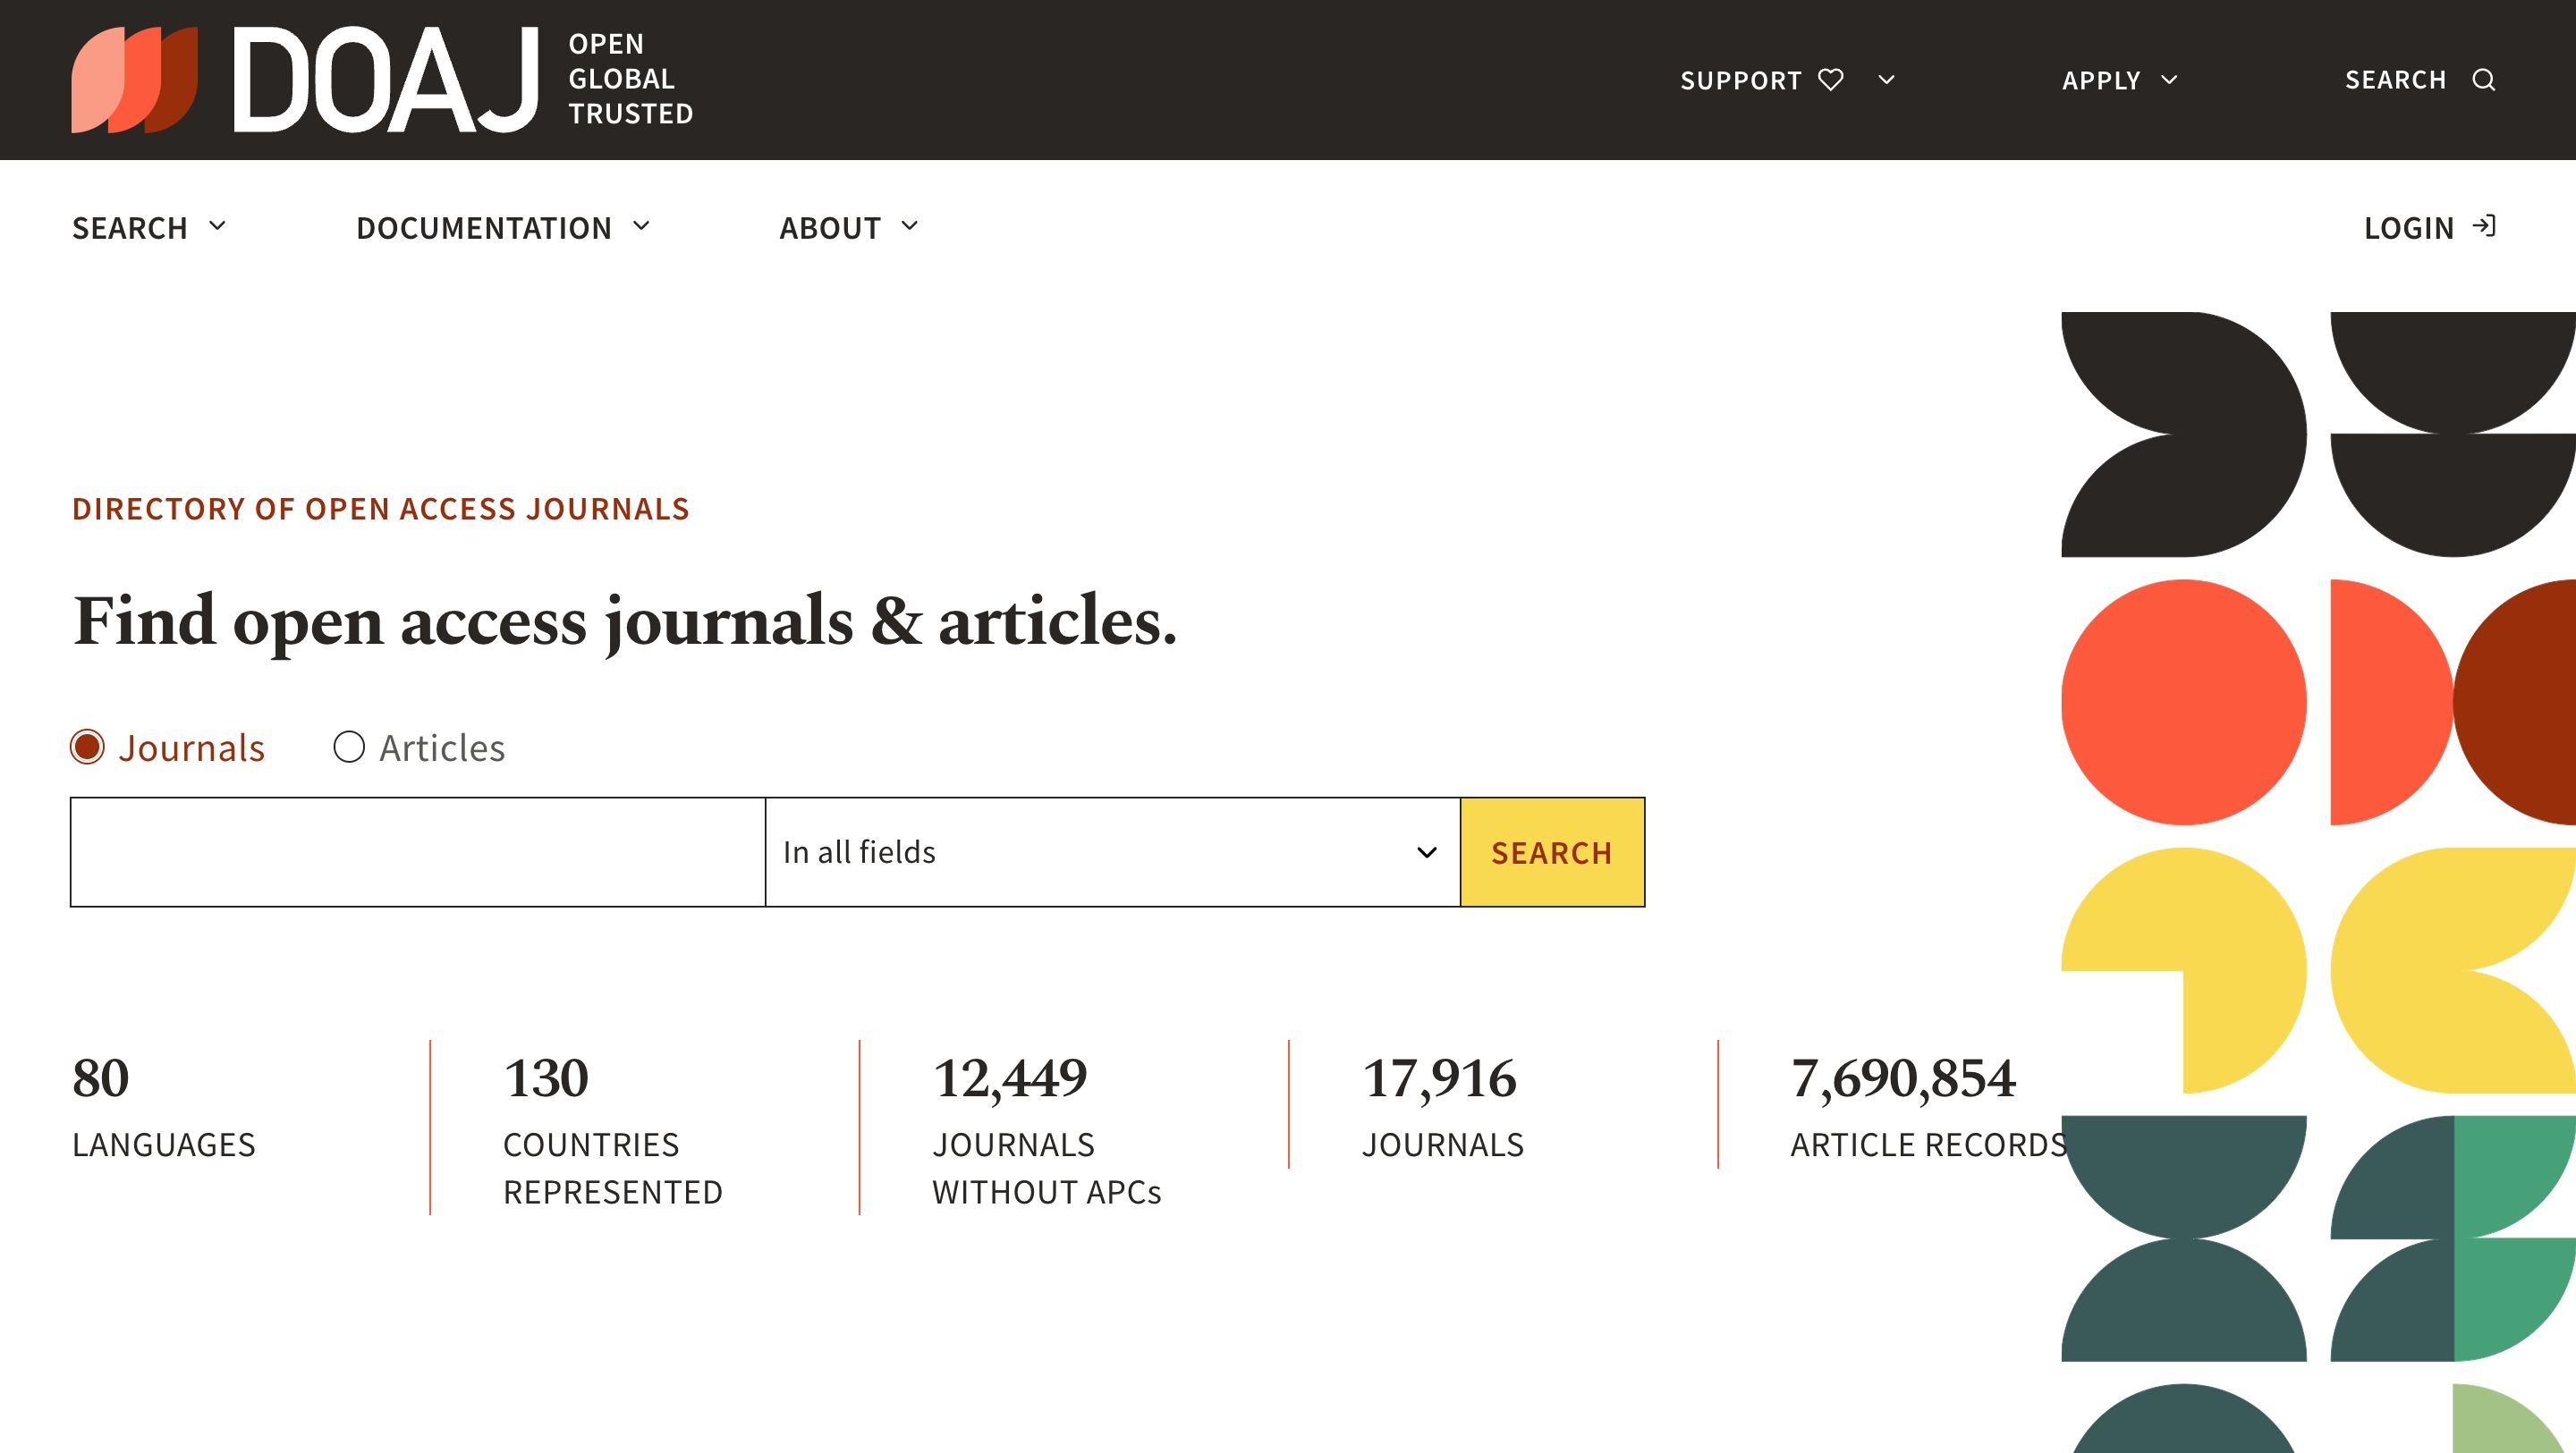 Drectory of Open Access Journals' website